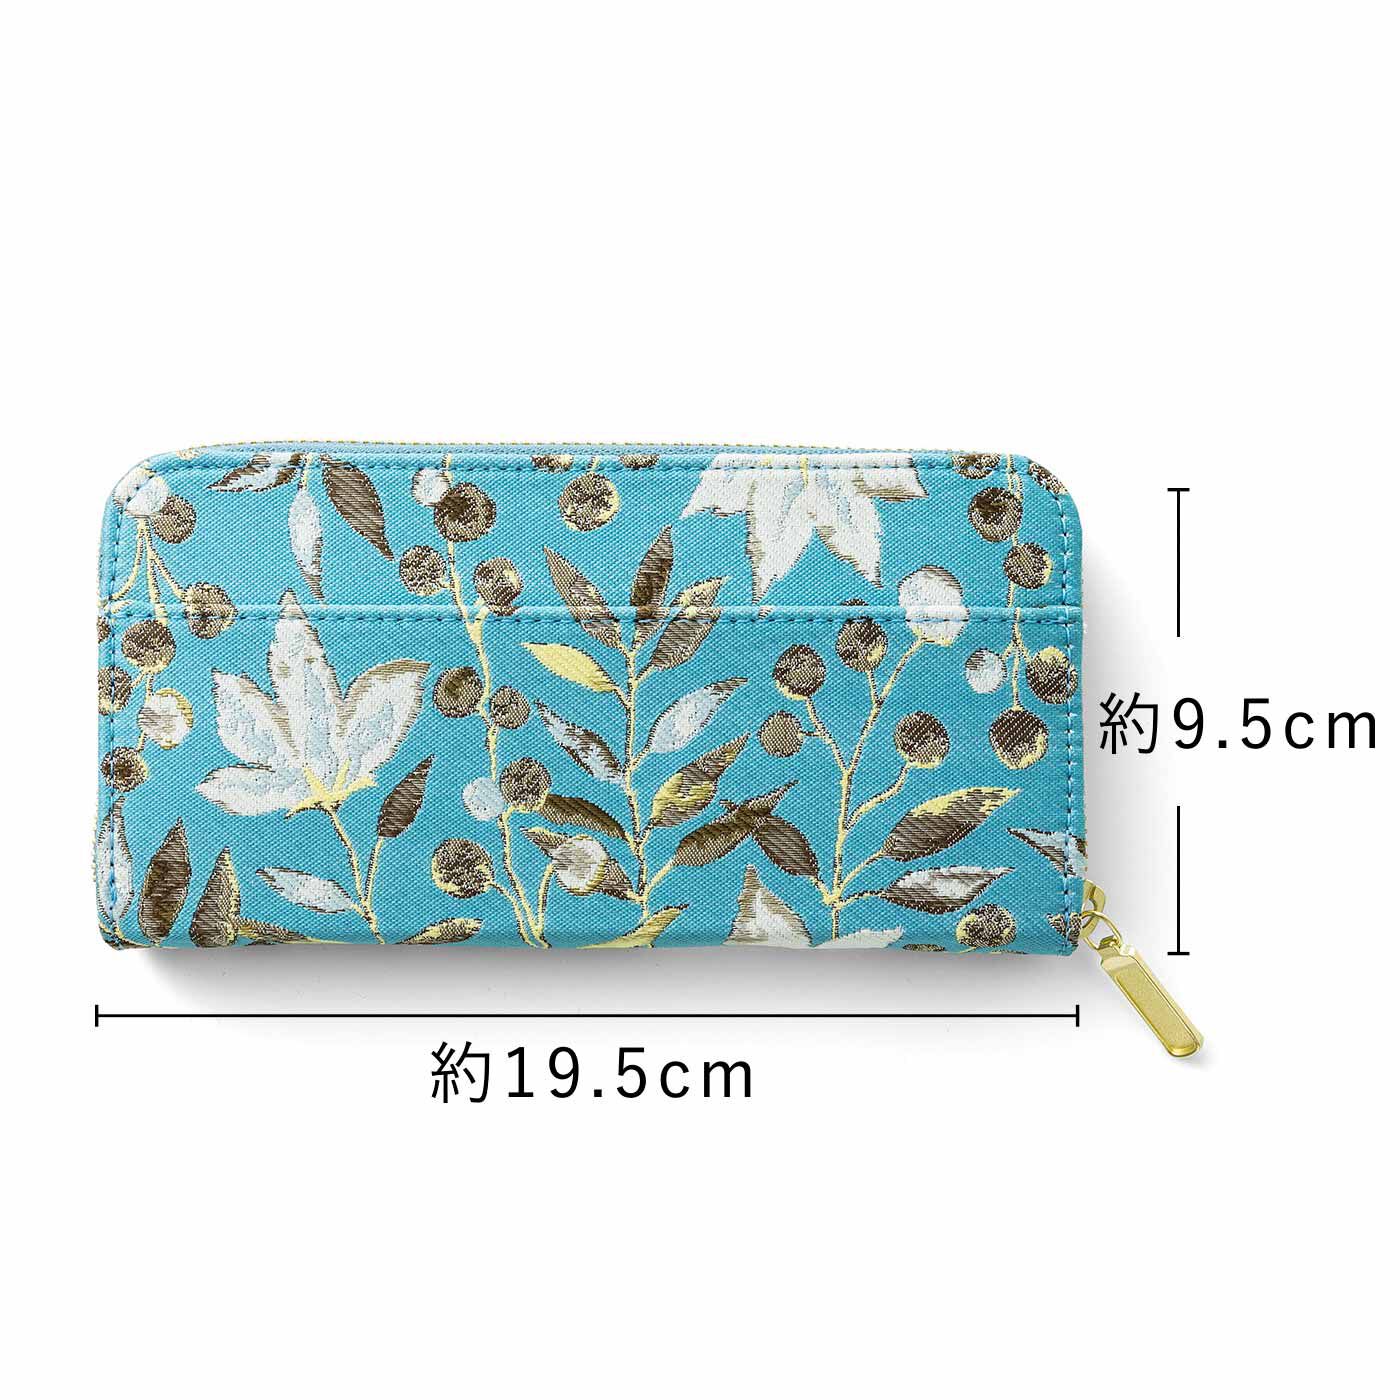 L'AMIPLUS|ラミプリュス　内側じゃばら本革遣い 麗しい草花が織り上げられた ジャカード長財布〈ターコイズブルー〉|BACK　後ろにオープンポケット付き。チケットやクーポンなどを入れておけます。